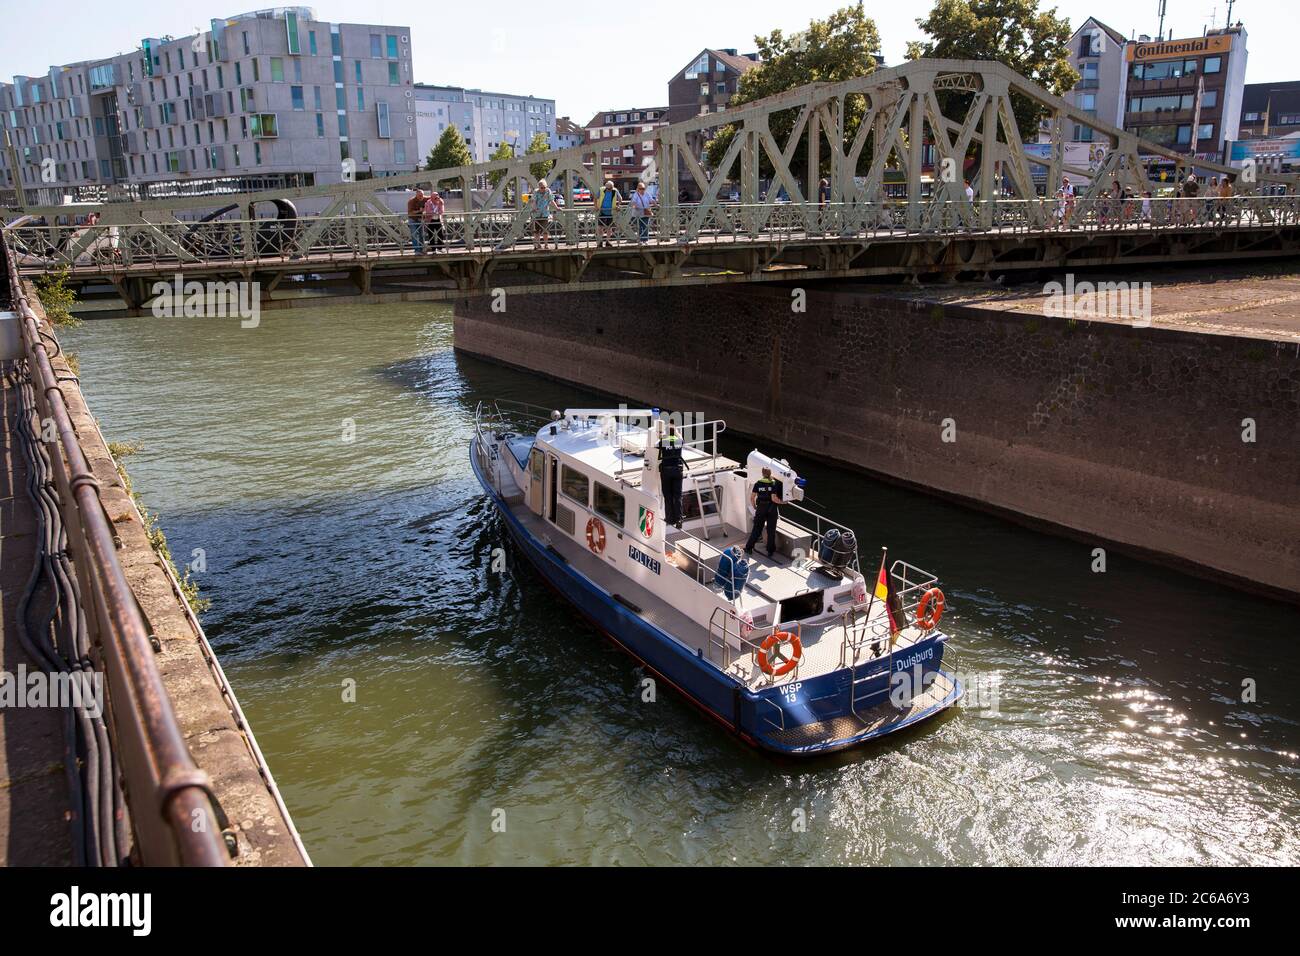 El barco de policía bajo el puente colgante entra en el puerto de Rheinau, Colonia, Alemania. Polizeibboot faehrt unter der Drehbruecke in den Rheinauhafen ein, Koeln, Foto de stock